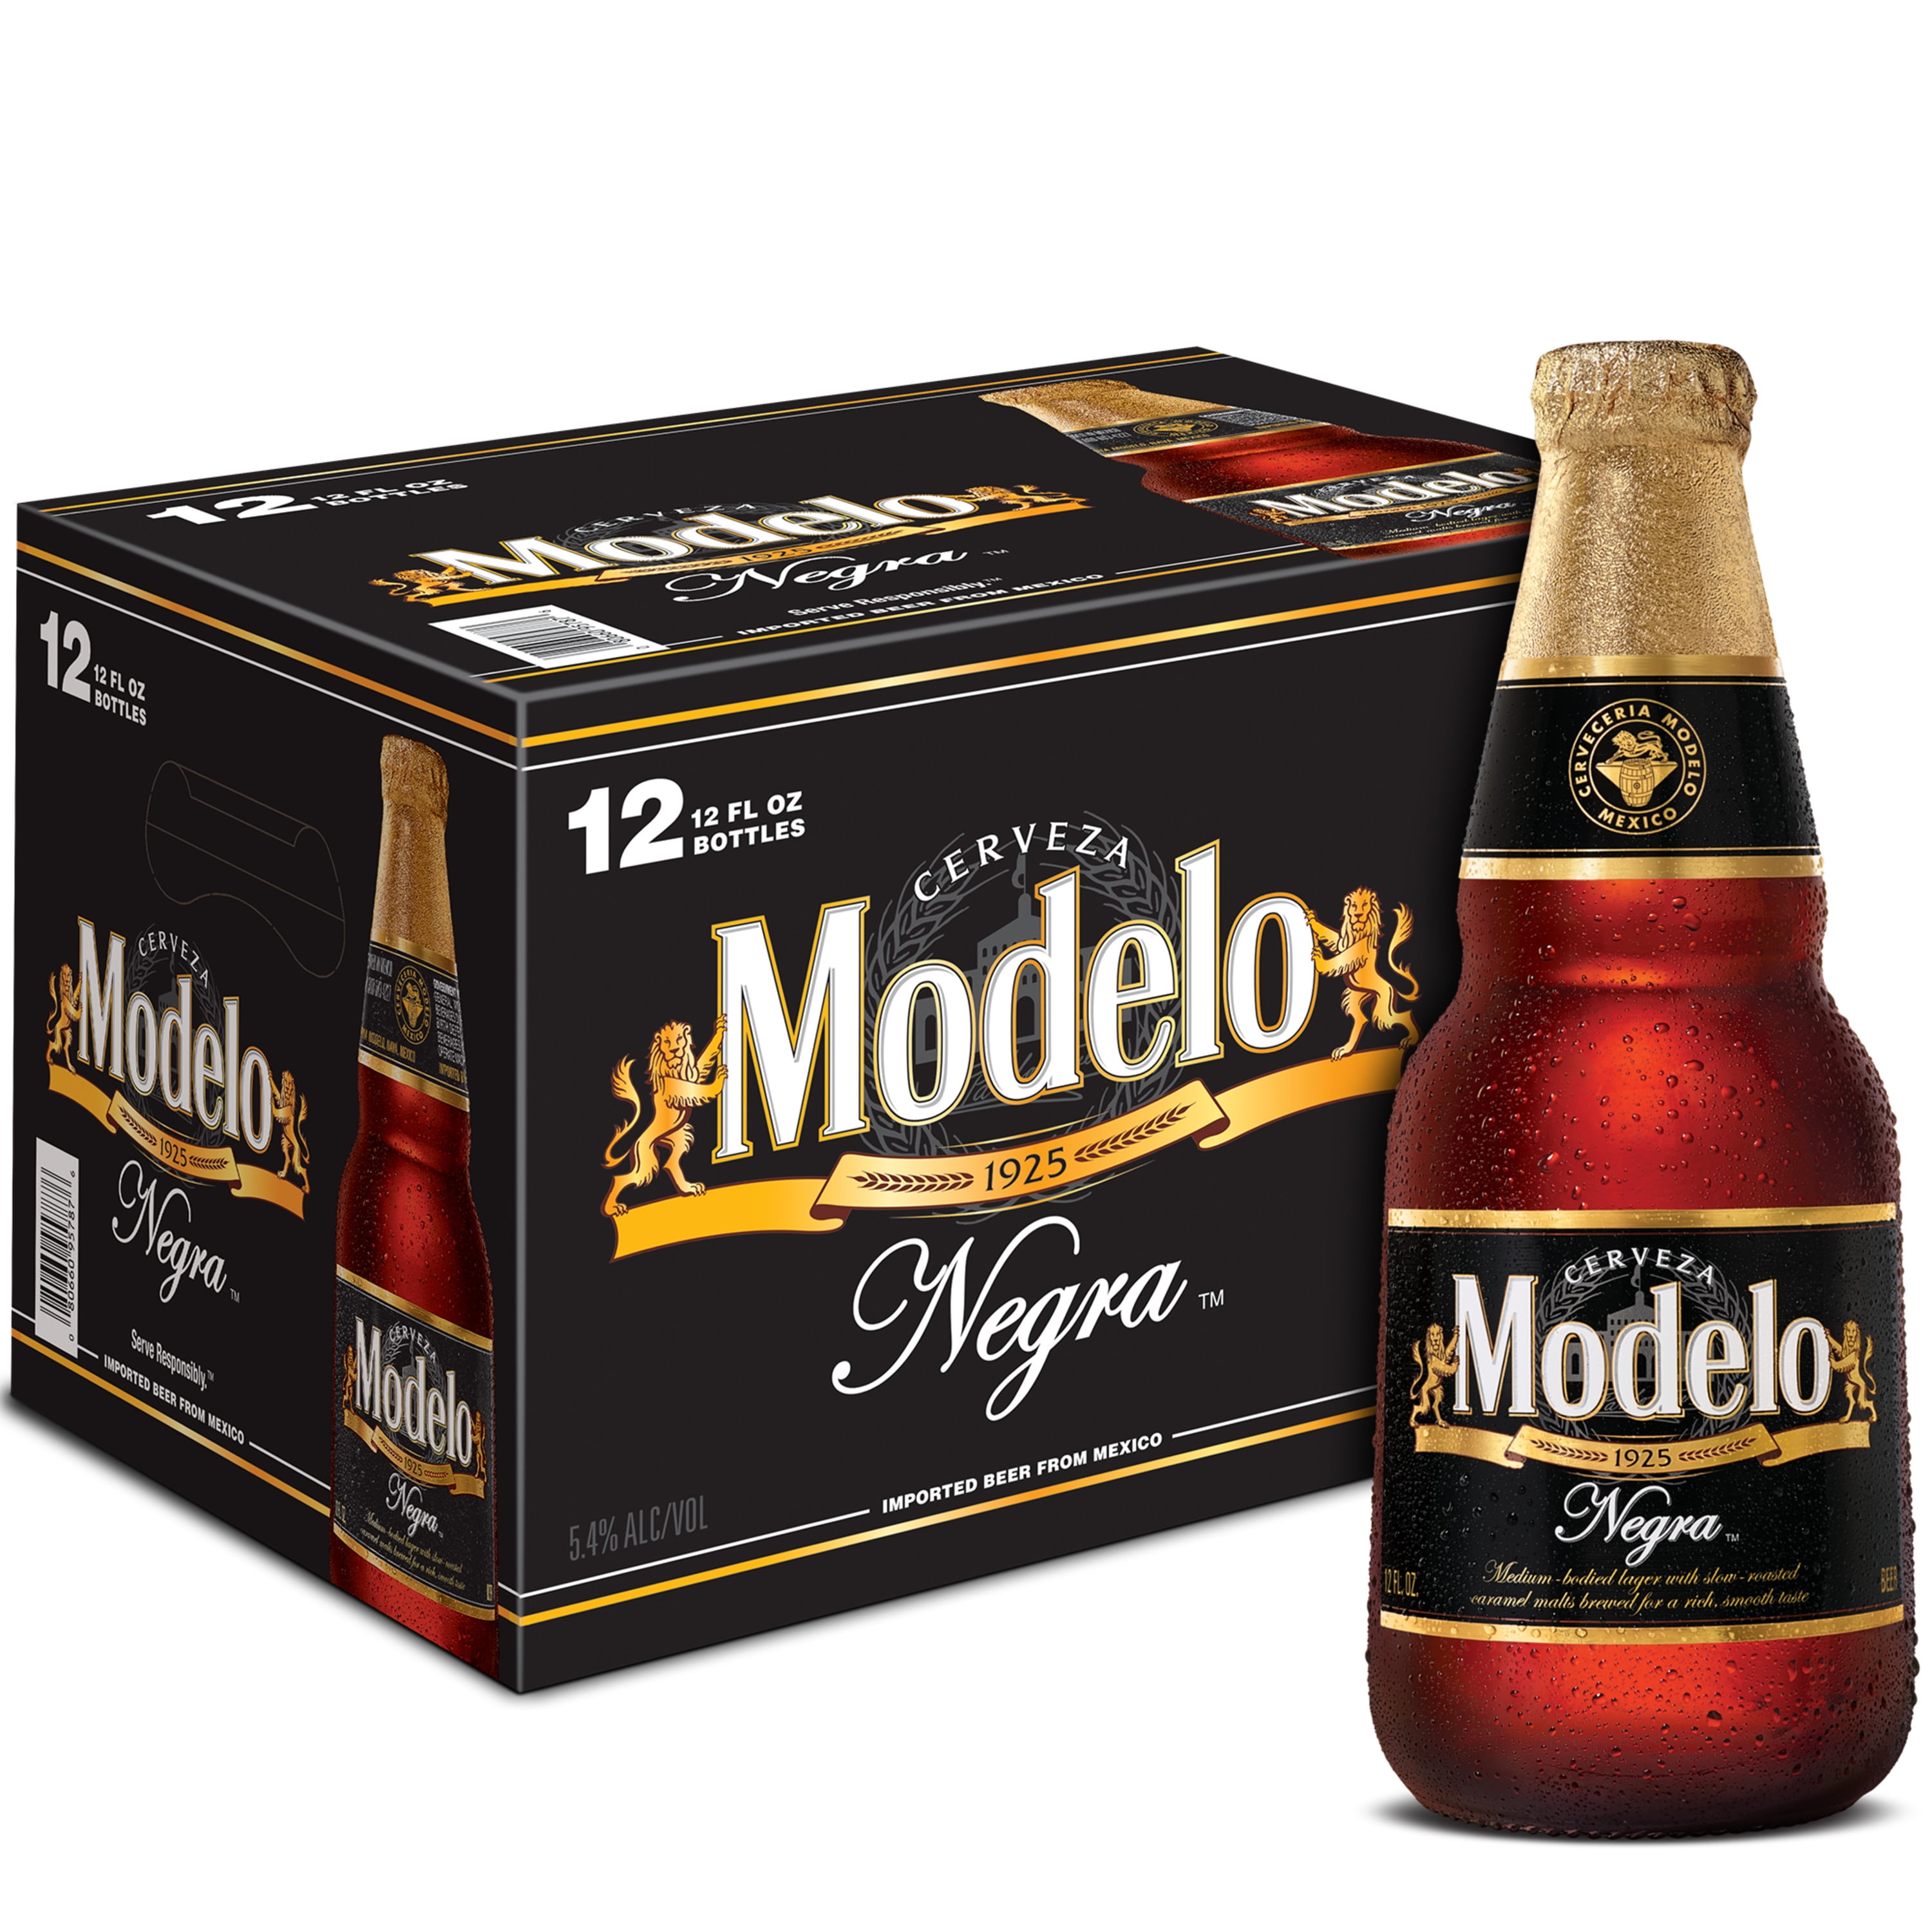 Modelo Negra Amber Lager Mexican Import Beer, 12 Pack, 12 fl oz Glass  Bottles, 5.4% ABV